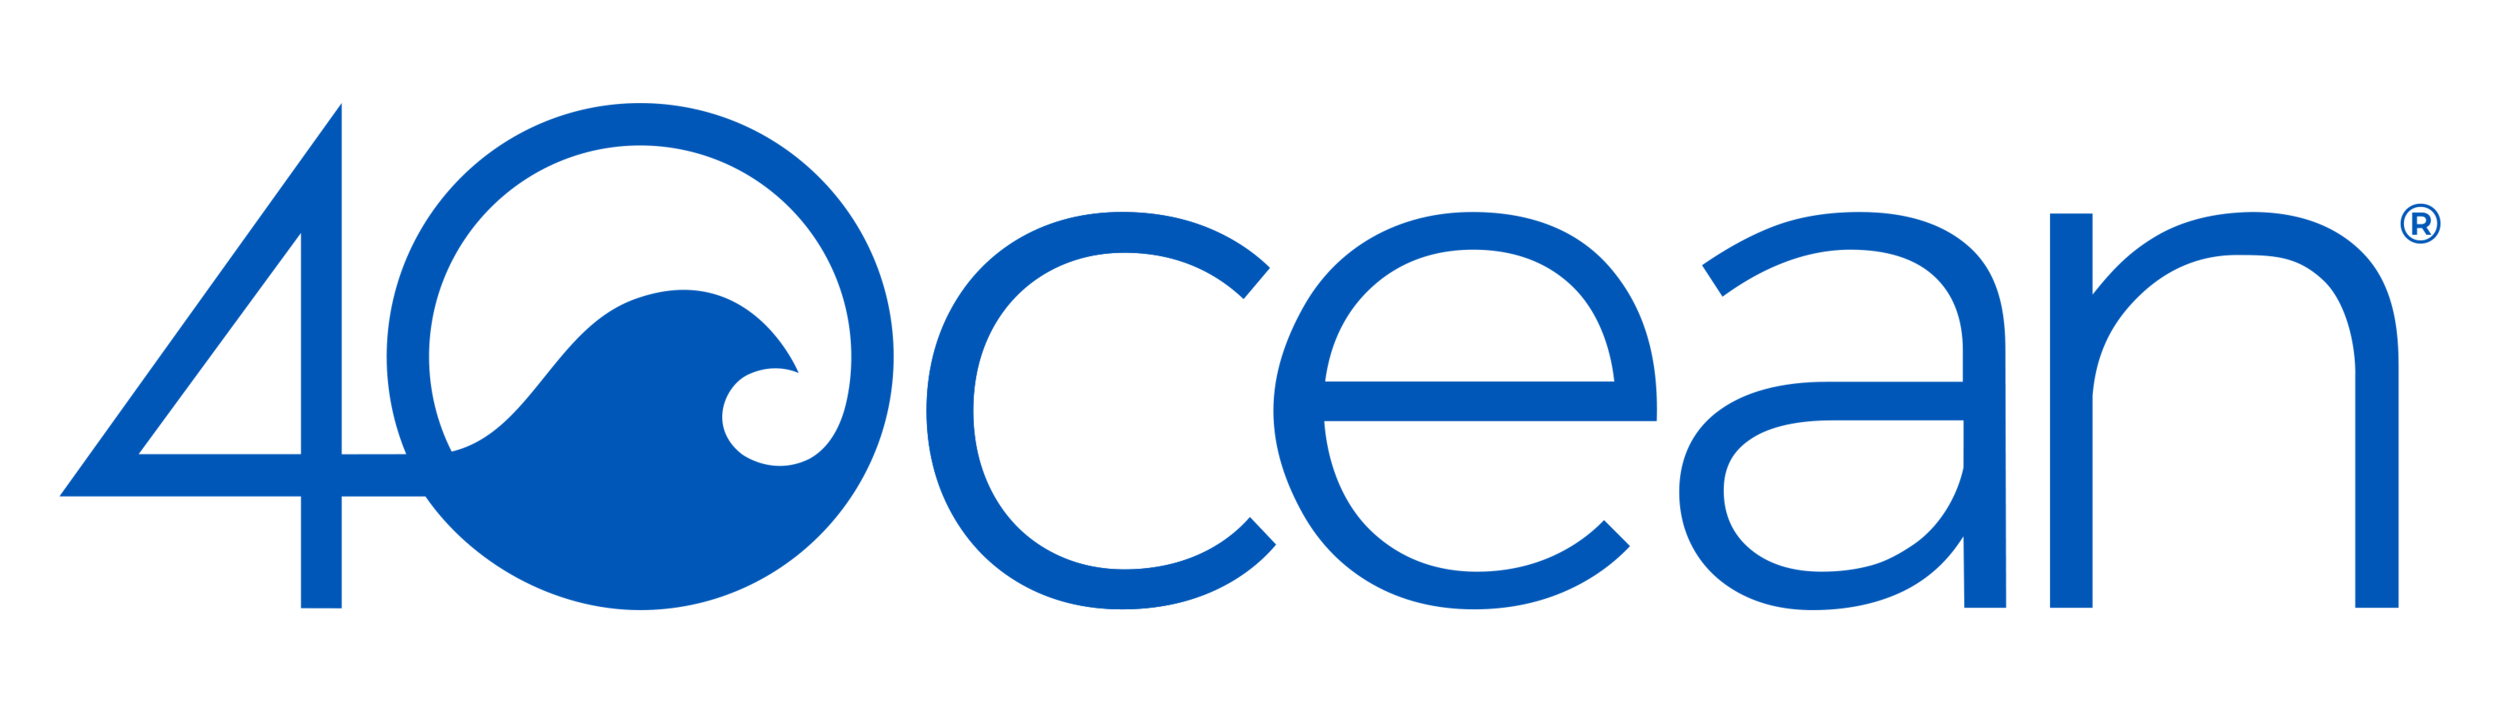 Logo_Blue.png